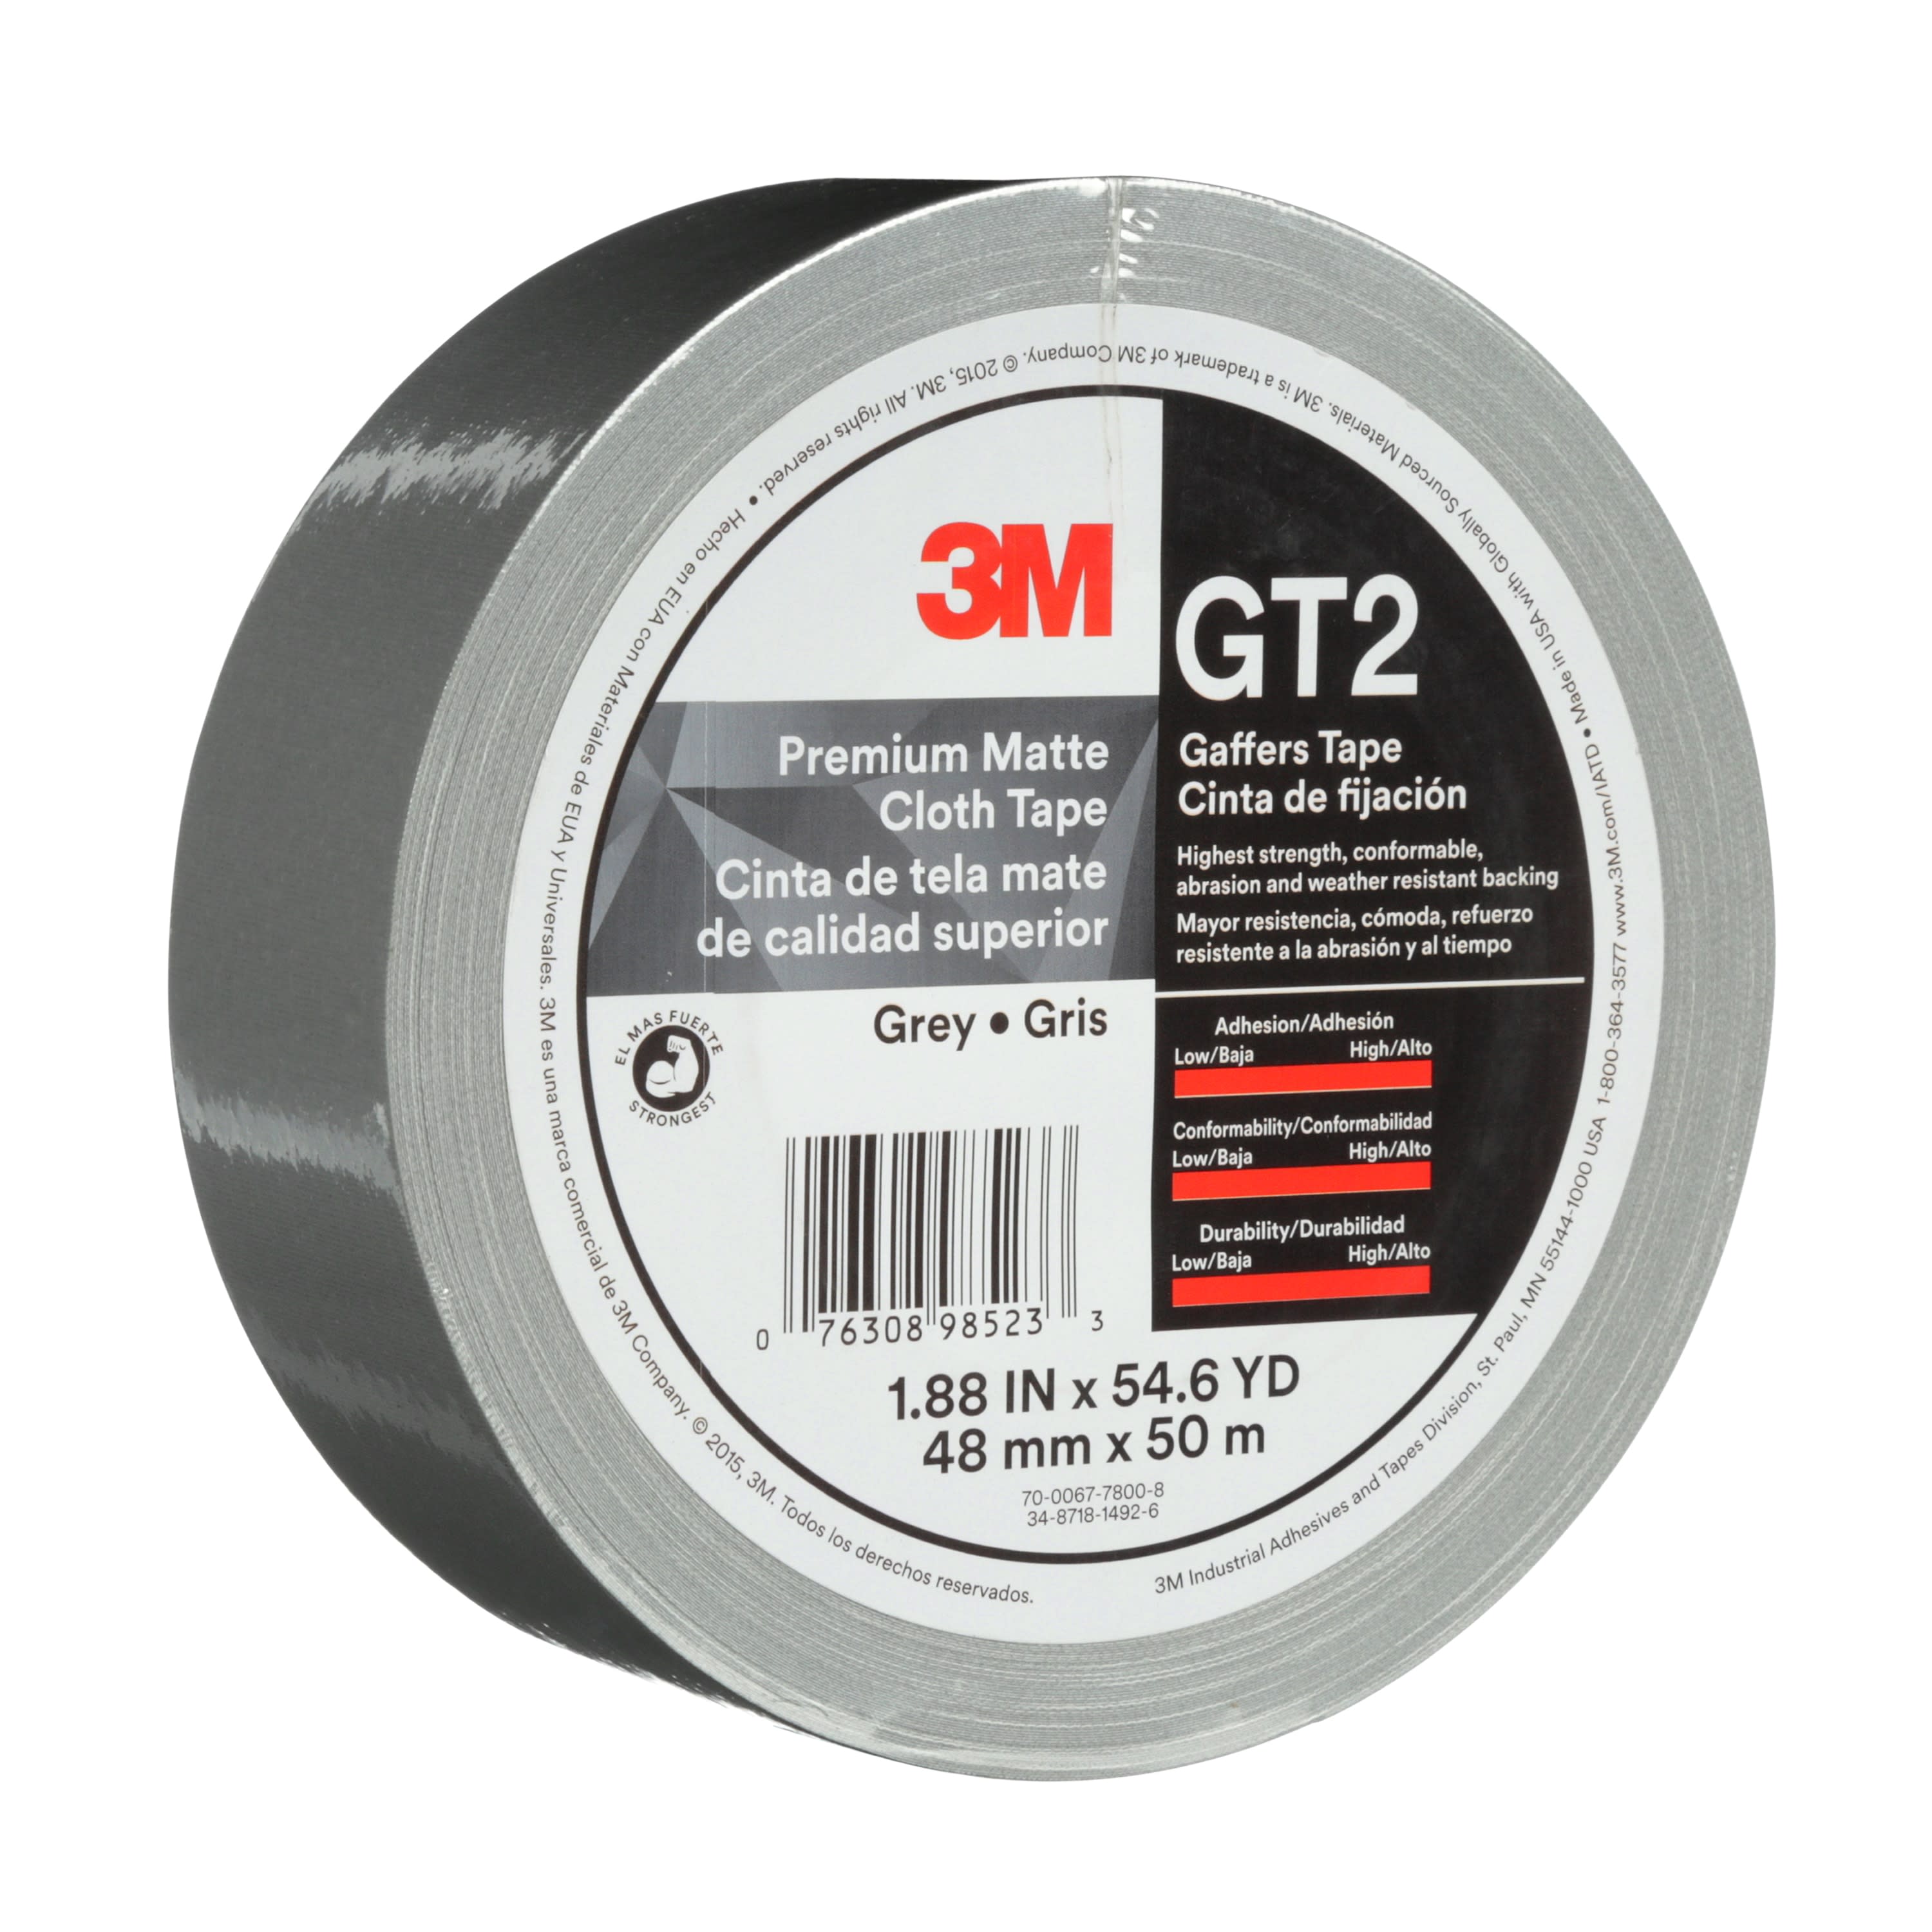 3M™ Premium Matte Cloth (Gaffers) Tape GT2, Grey, 48 mm x 50 m, 11 mil,
24 per case